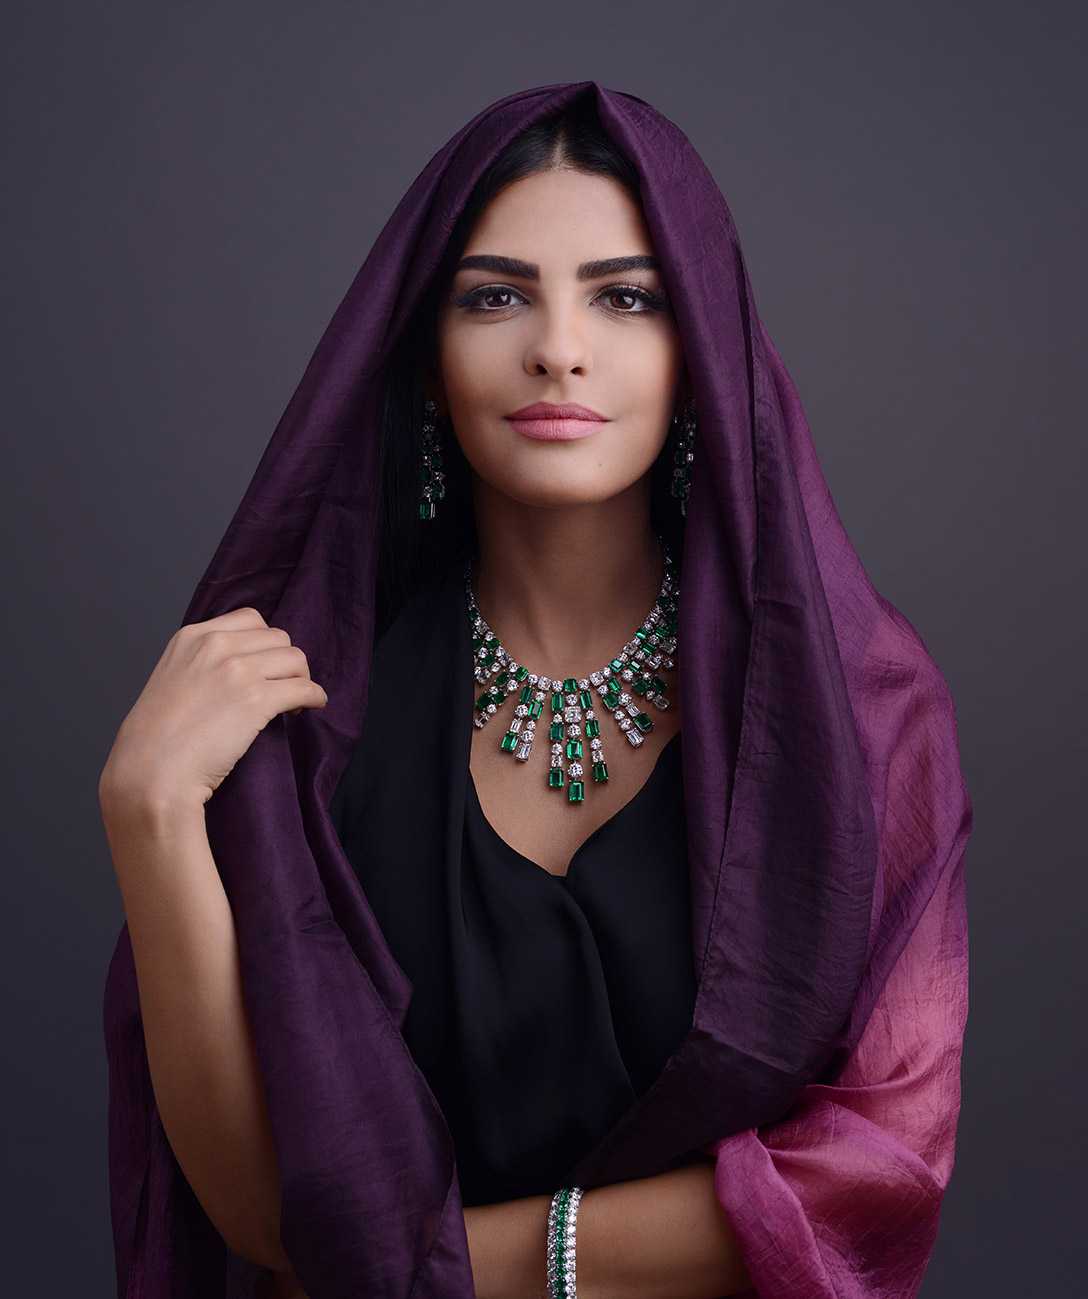 Trang phục truyền thống được kết hợp trang sức độc đáo của Công chúa Ameera.